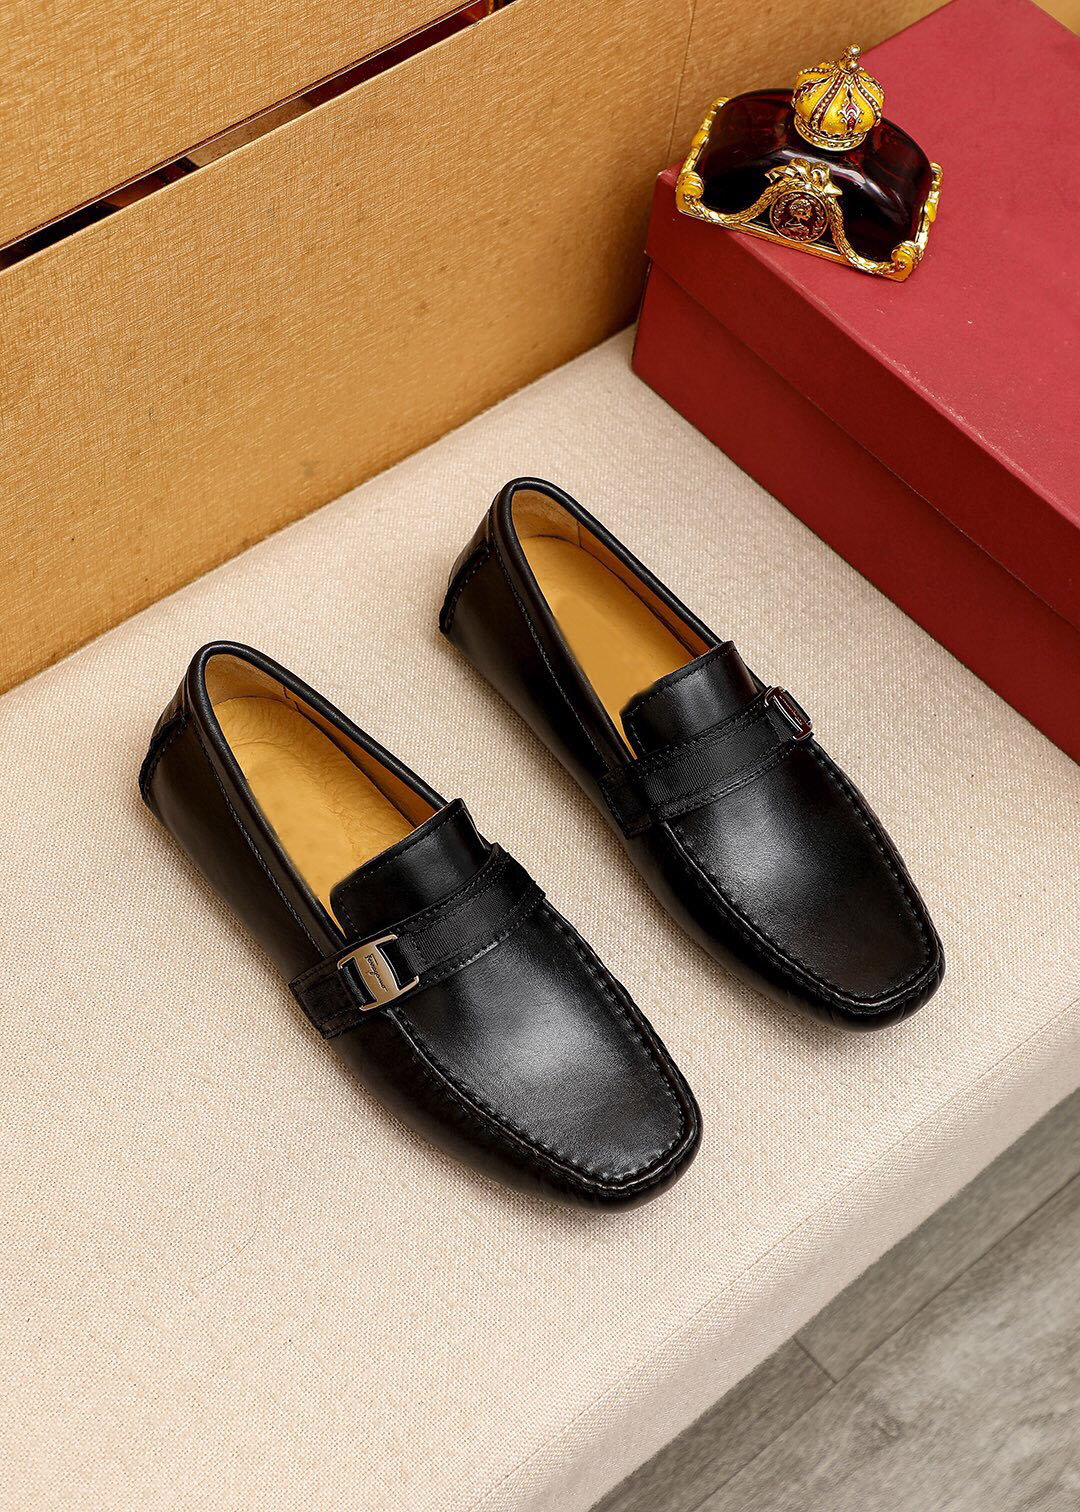 Scarpe da uomo per uomini di alta qualit￠ Feeli casual casual marca marca scarpe pianeggianti formali scarpe da festa classiche dimensioni 37-47